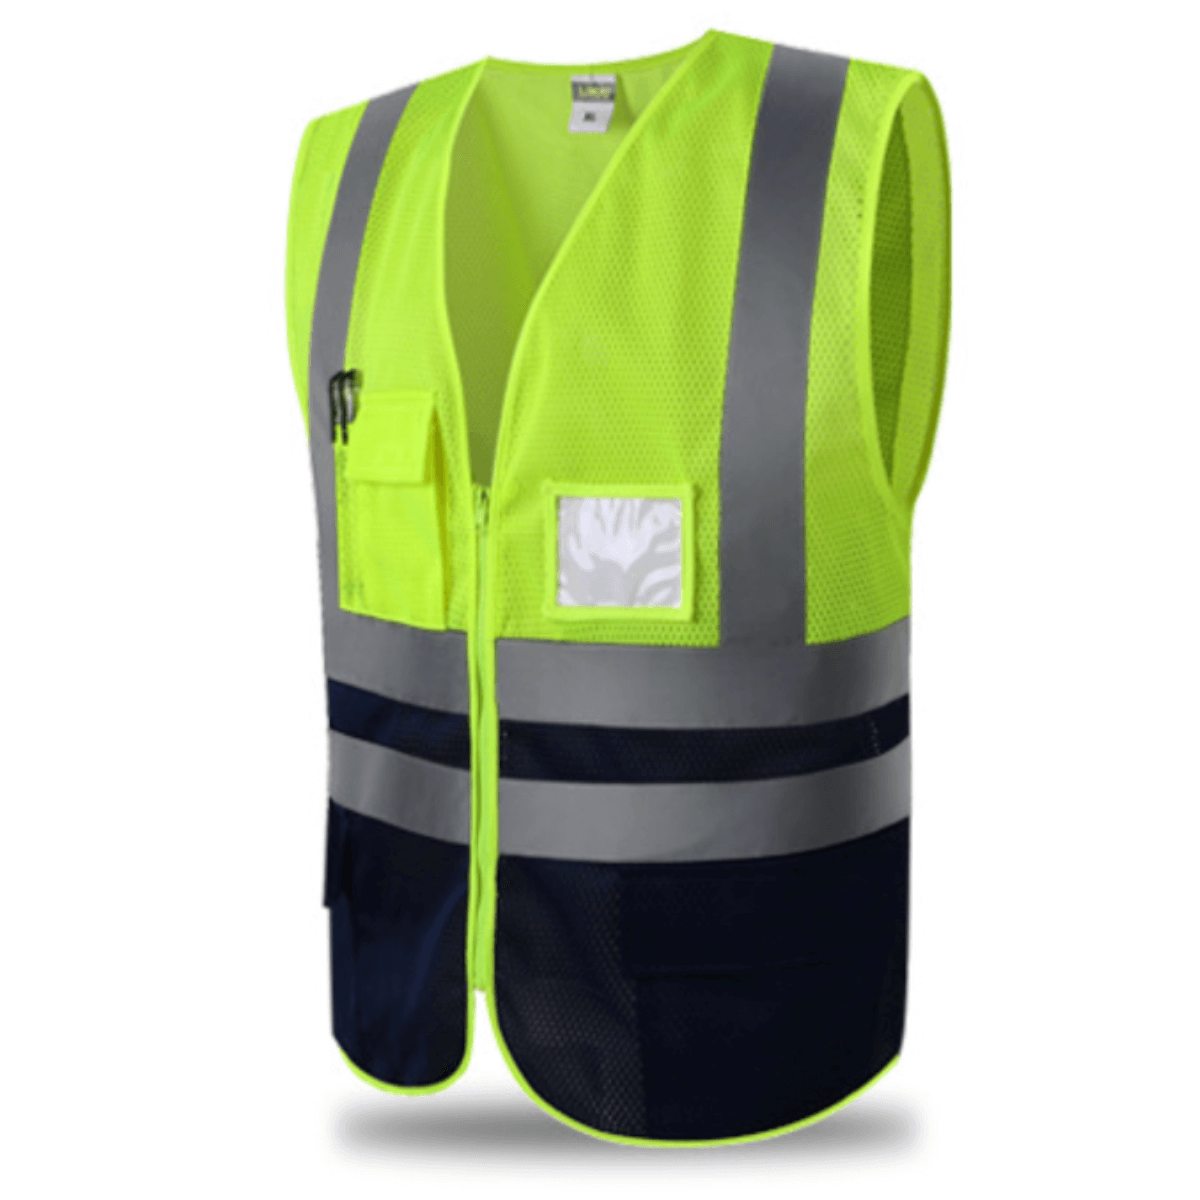 Safety Vests  Reflective Work Vest – HYCOPROT